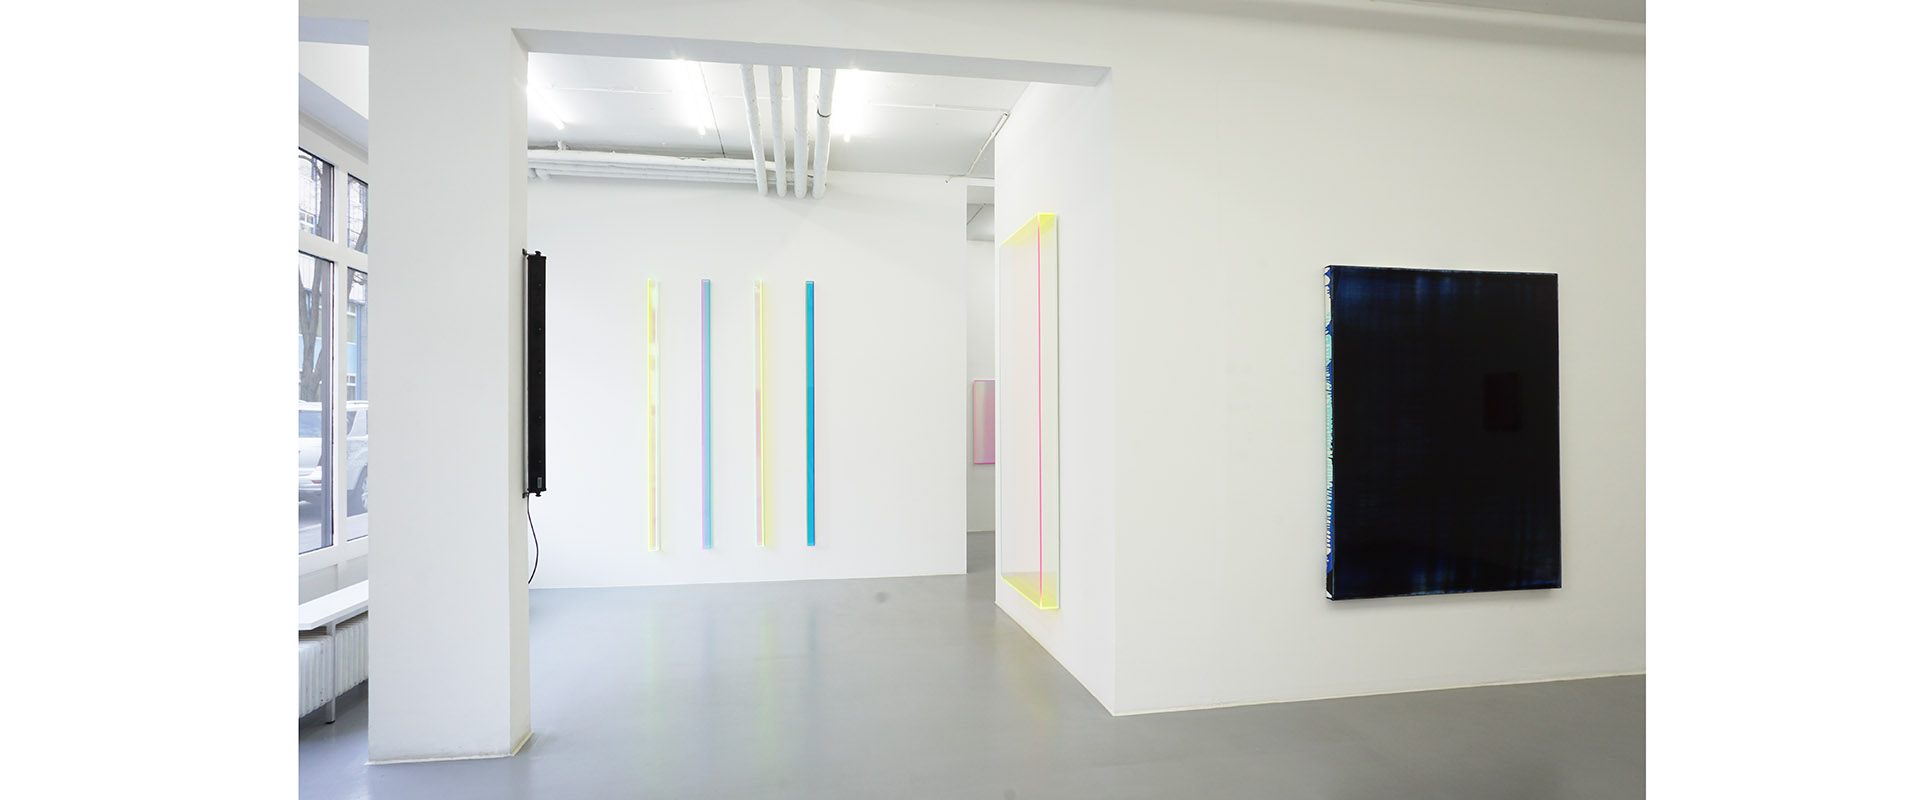 Ausstellungsansicht "High Frequencies". Regine Schumann - Jus Juchtmans, Galerie Renate Bender 2018